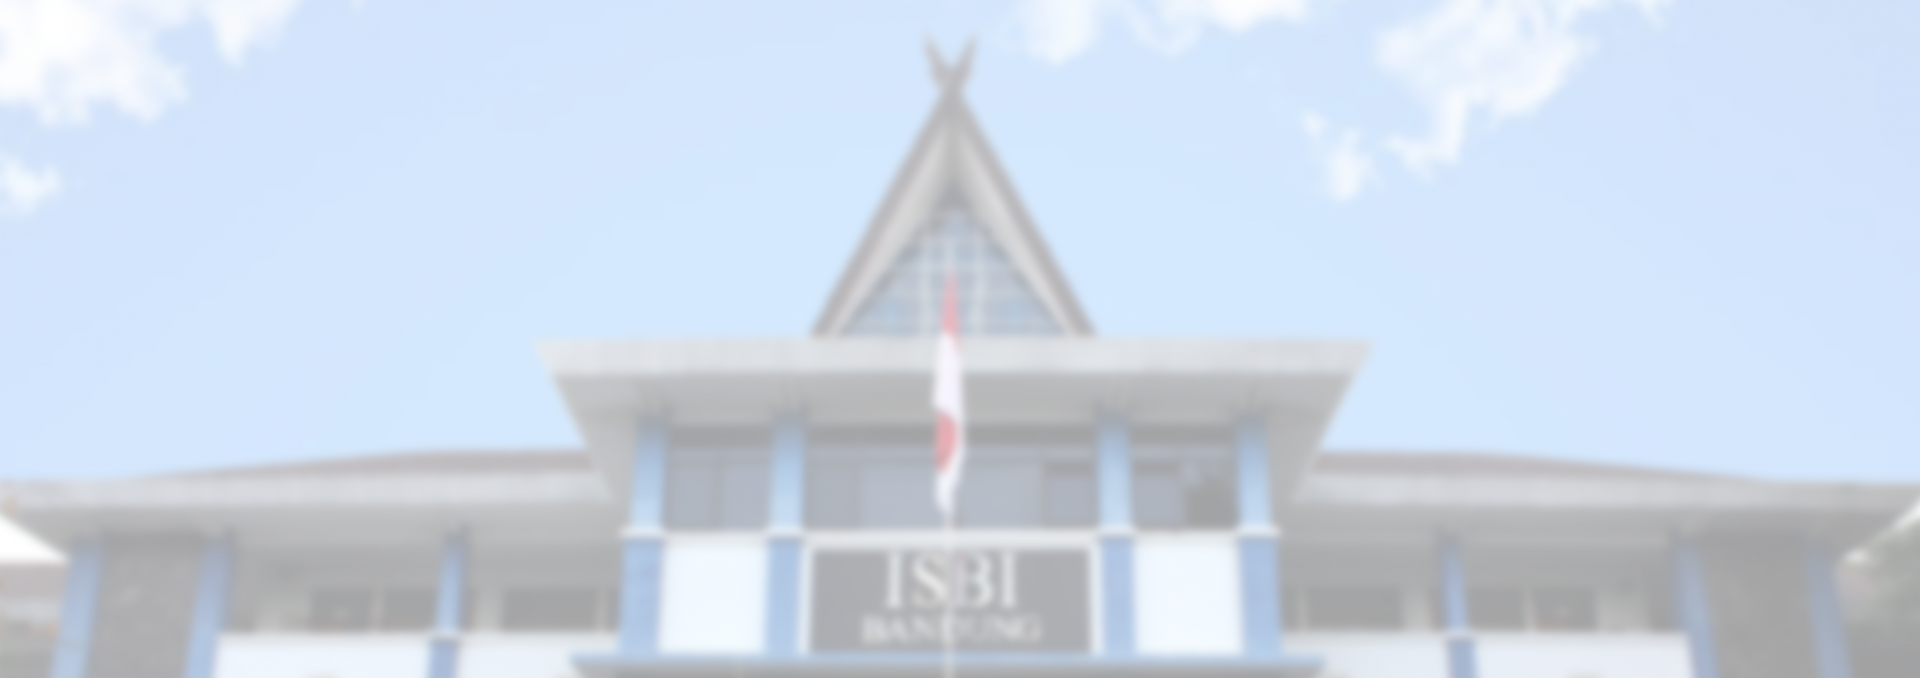 Rektor dan segenap Keluarga Besar ISBI Bandung Mengucapkan Turut Berduka Cita atas berpulang ke rahmatullah Desiana Syawalia, Mahasiswa Jurusan Karawitan, Semester 4, FSP ISBI Bandung